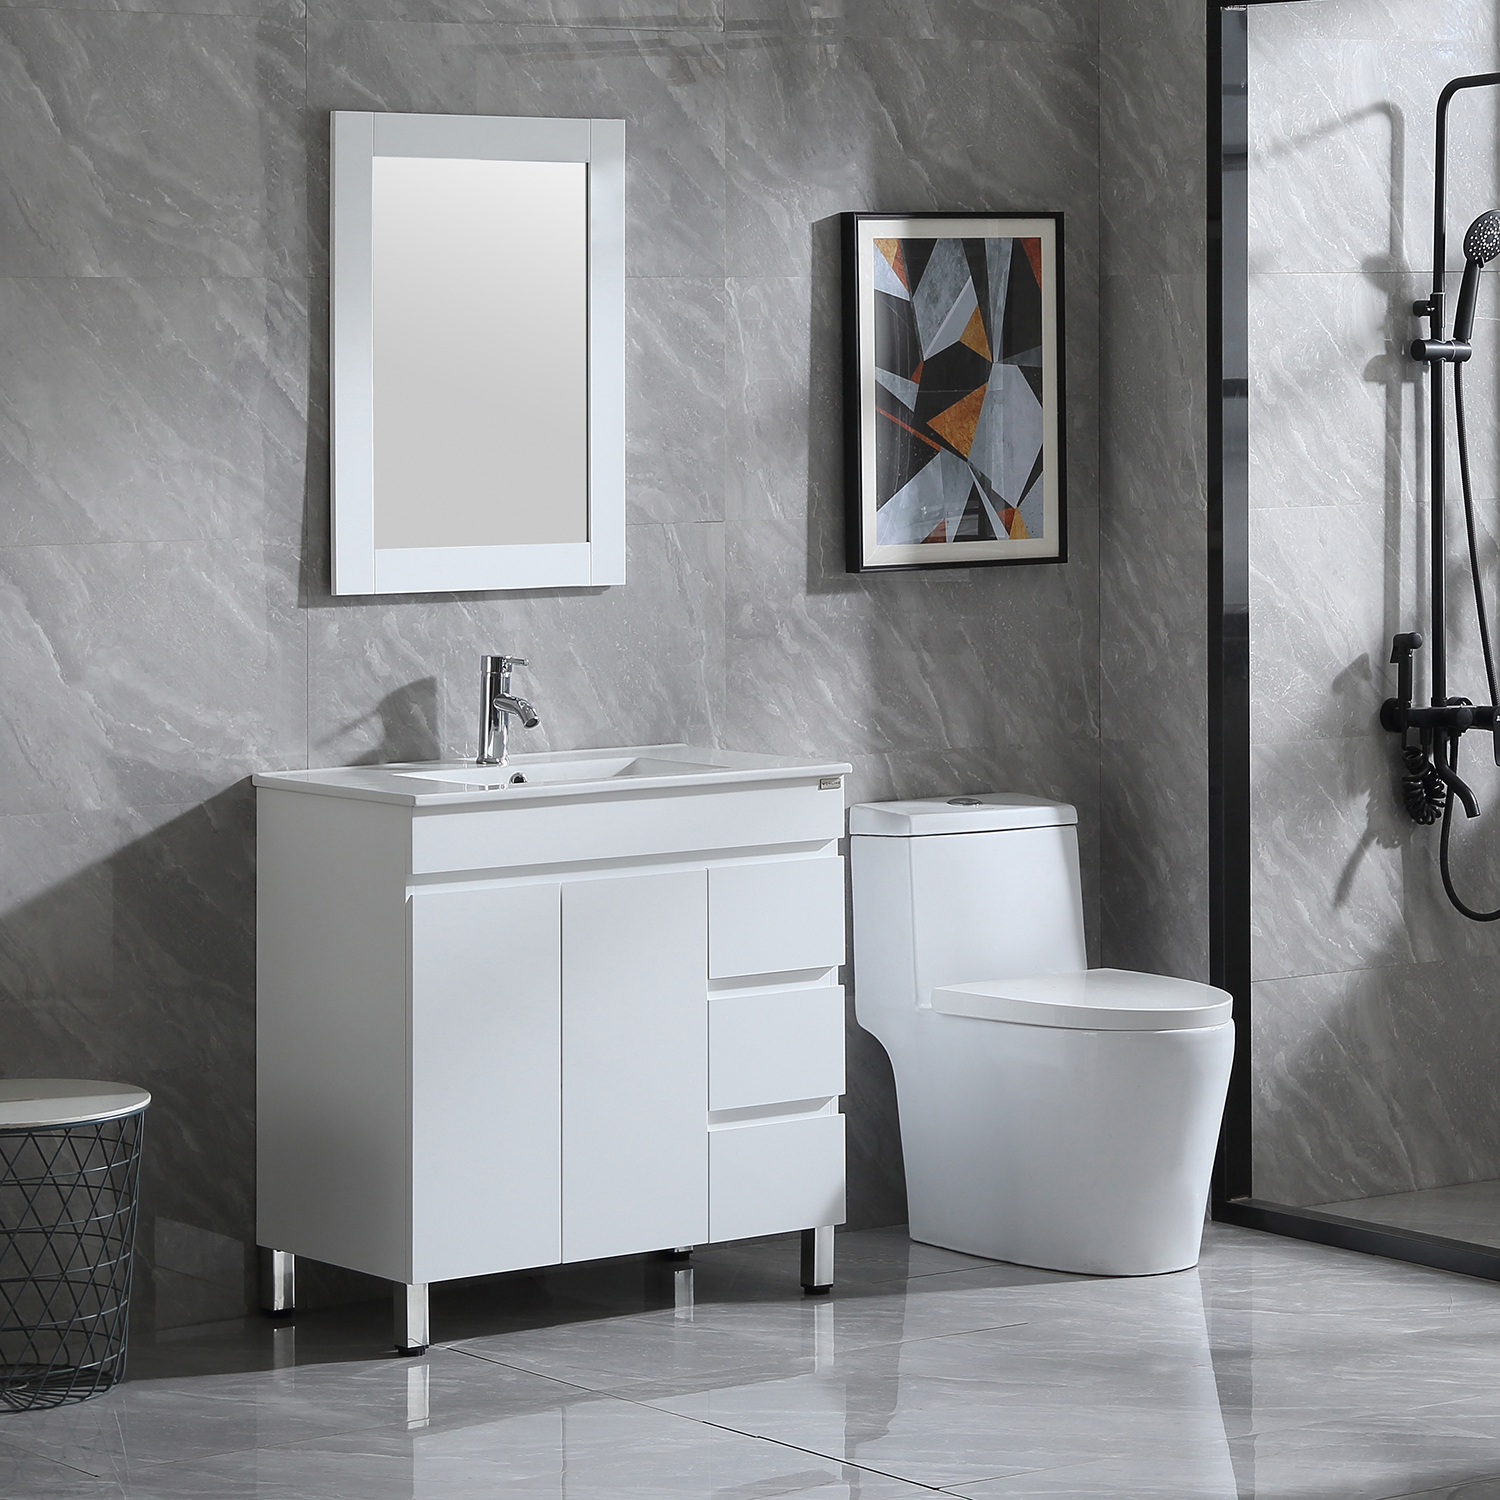 Buy Walcut 32 White Modern Ceramic Vessel Sink Wood Bathroom Vanity Cabinet W Mirror Faucet Online In Indonesia 481508008